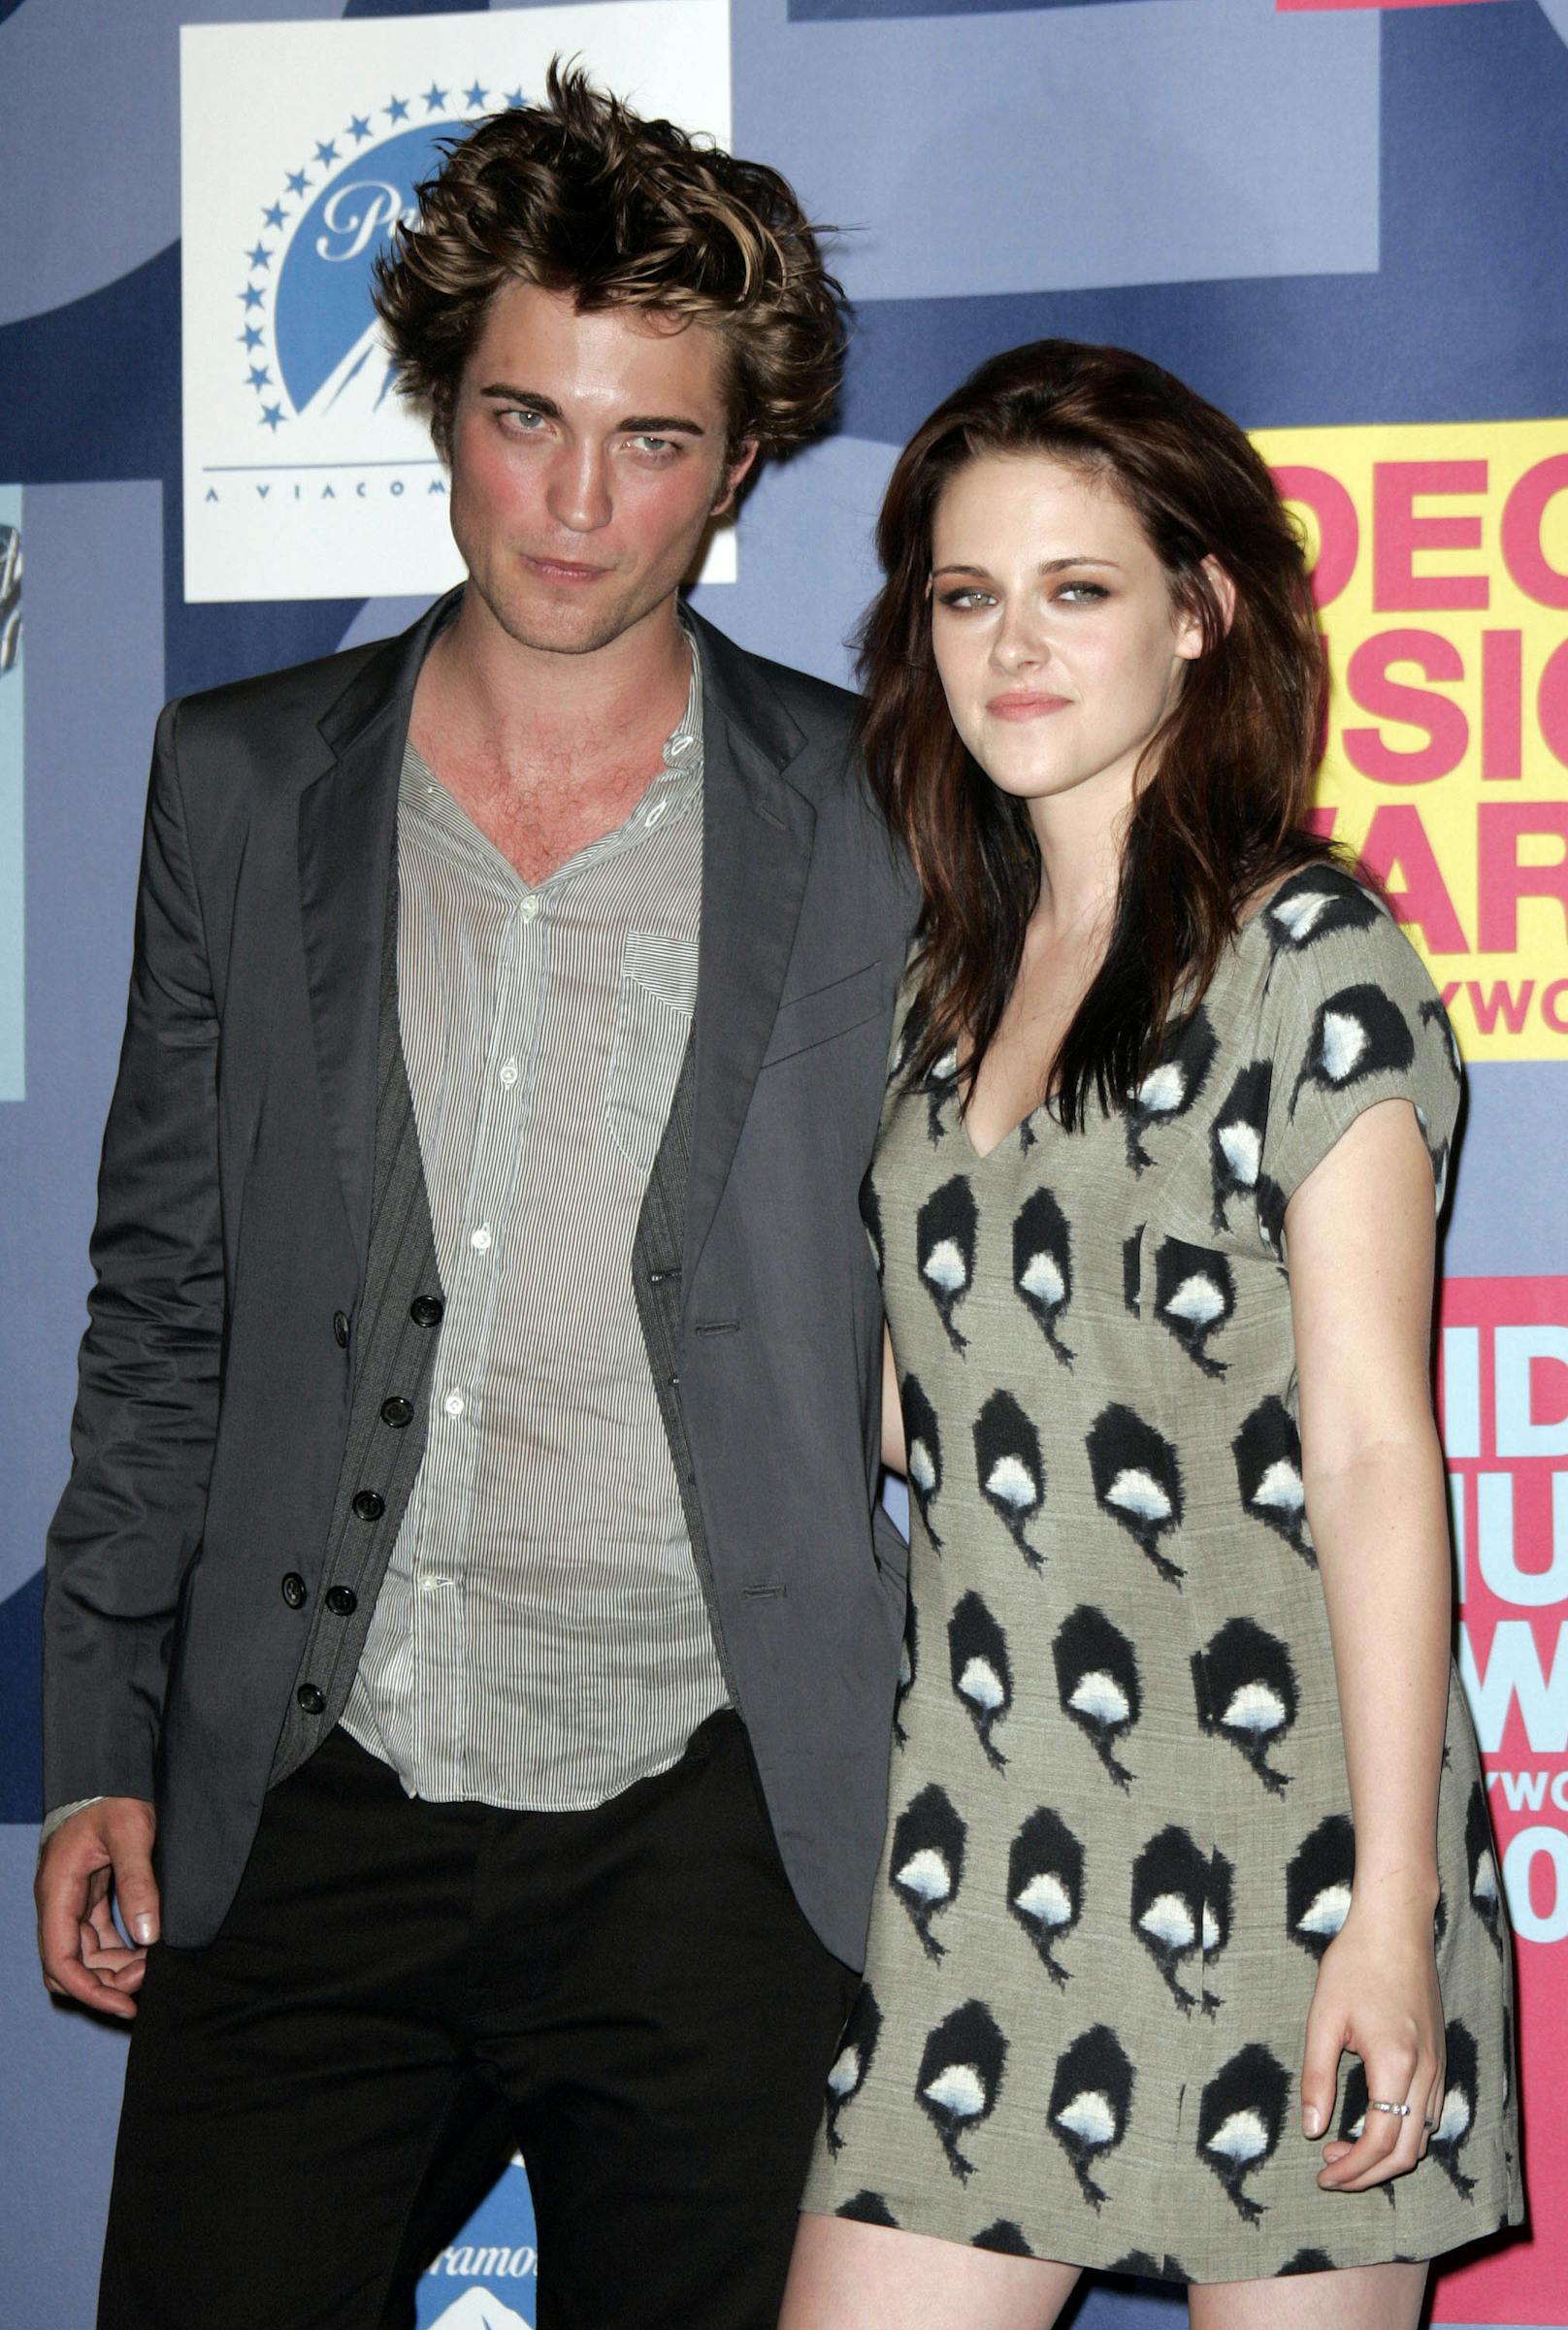 Das Twilight-Traumpaar Kristen Stewart und Robert Pattinson hielt, bis Kristen unter Regisseur Rupert Sanders drehte. Nach pikanten Fotos verließ ihn seine Frau. Rob und Kristen versuchten es noch eine zeitlang miteinander, aber lang ging auch bei ihnen die Beziehung nicht mehr gut. 